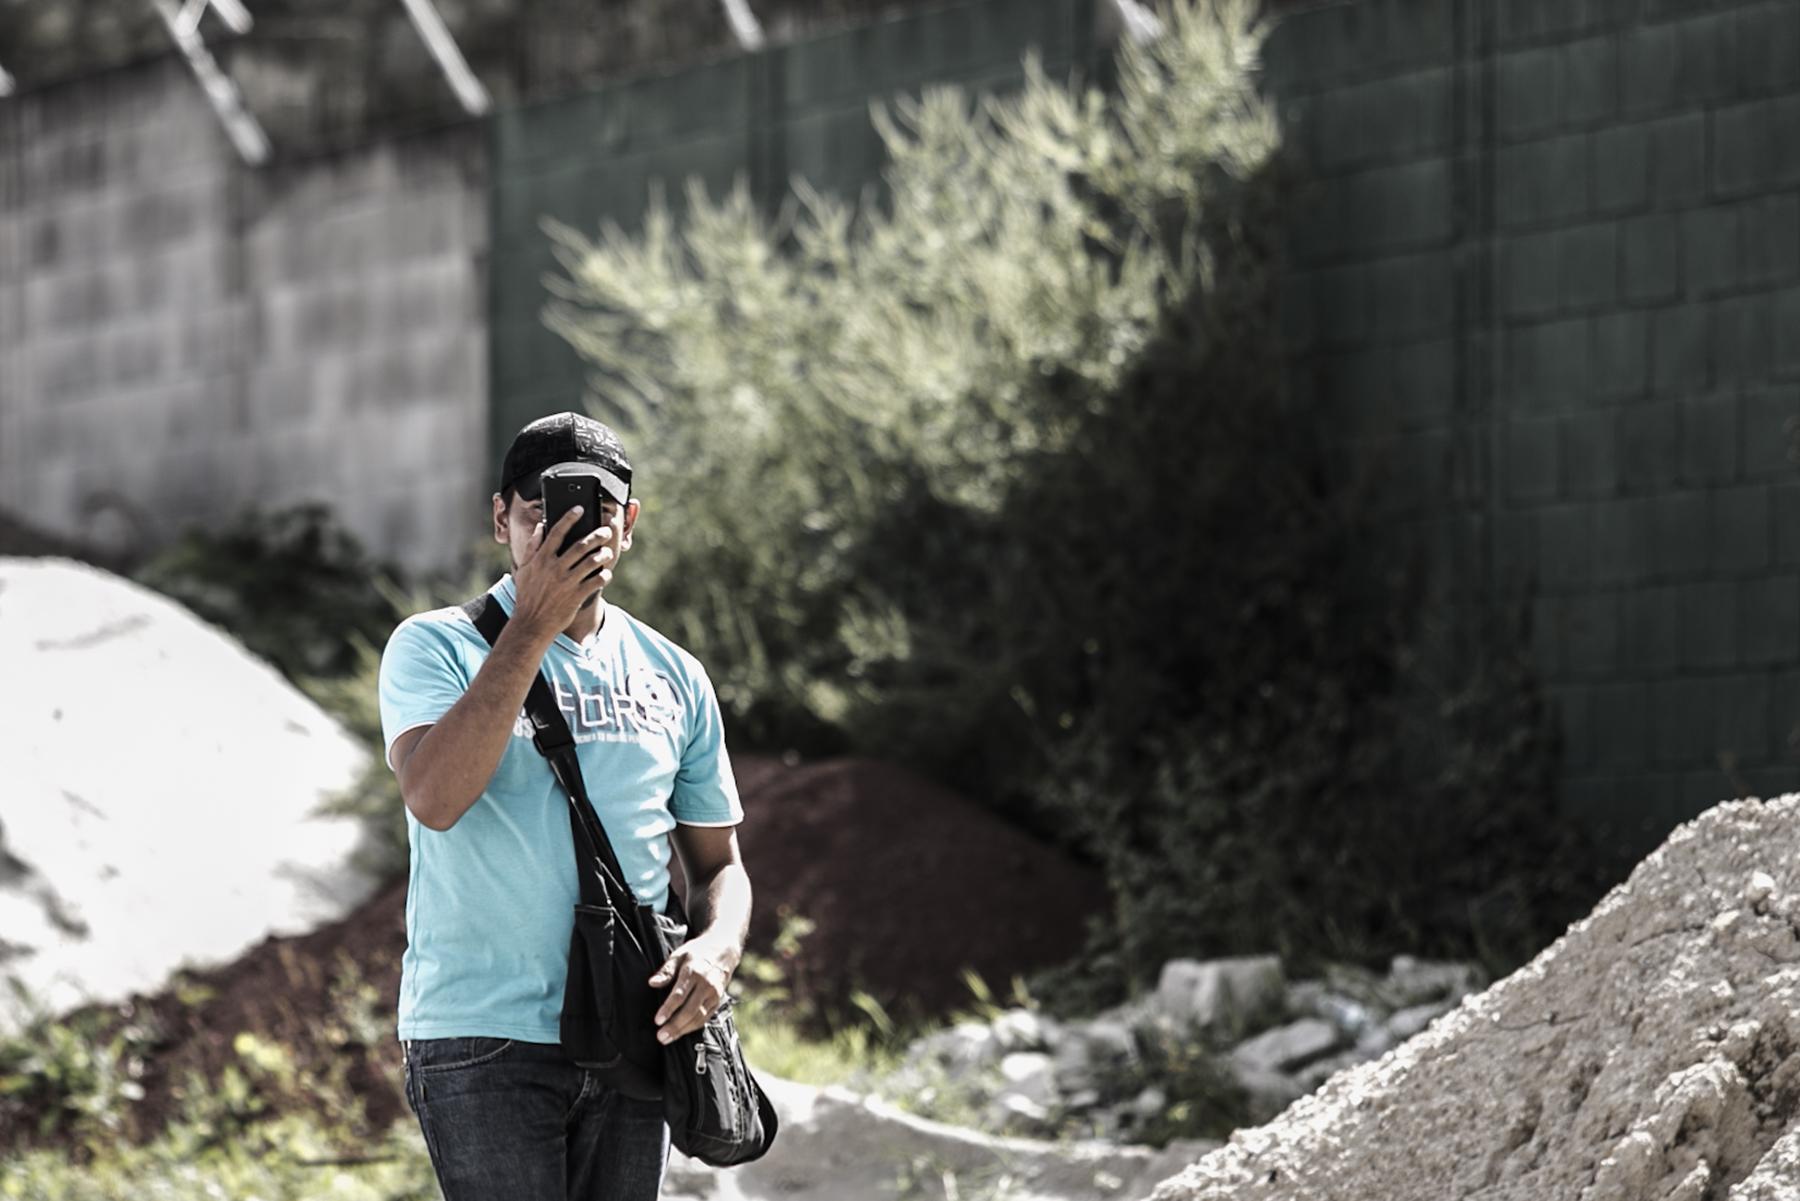 El 28 de julio de 2016, sujetos fotografiaron con sus celulares a periodistas de El Faro, en medio de una conferencia de prensa de la Policía. Cuando los periodistas de El Faro preguntaron quiénes eran y por qué los fotografiaban, estos se identificaron como 